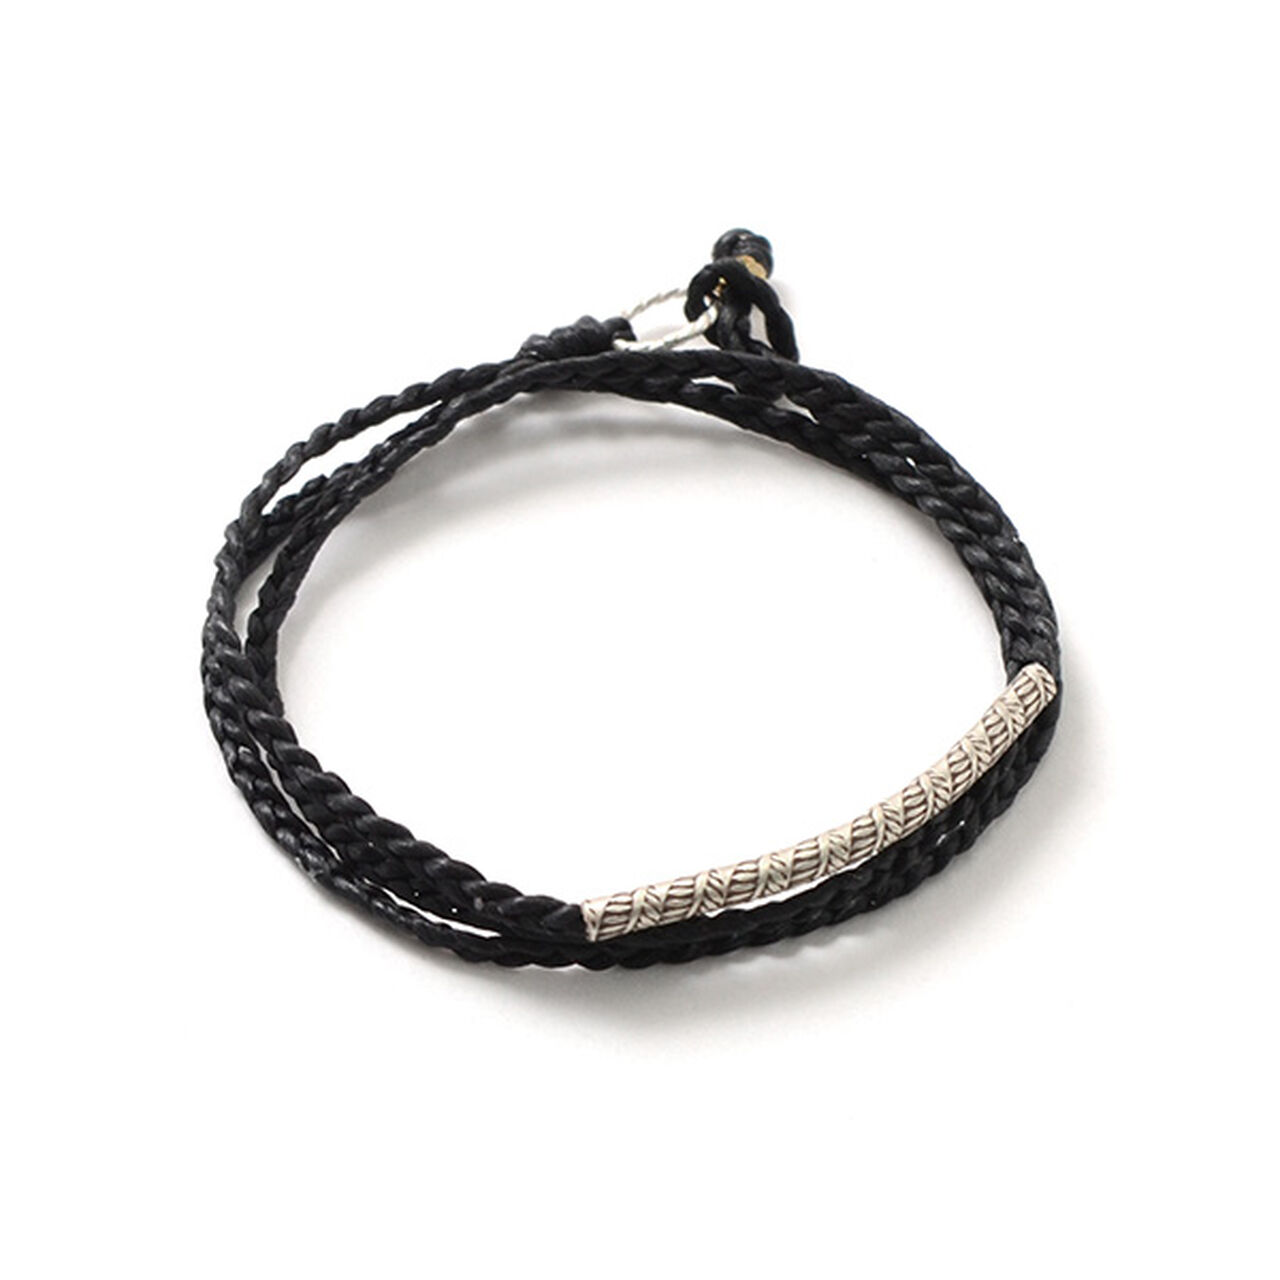 Wax Cord Karen Silver Tube Anklet / Bracelet / Necklace,Black, large image number 0